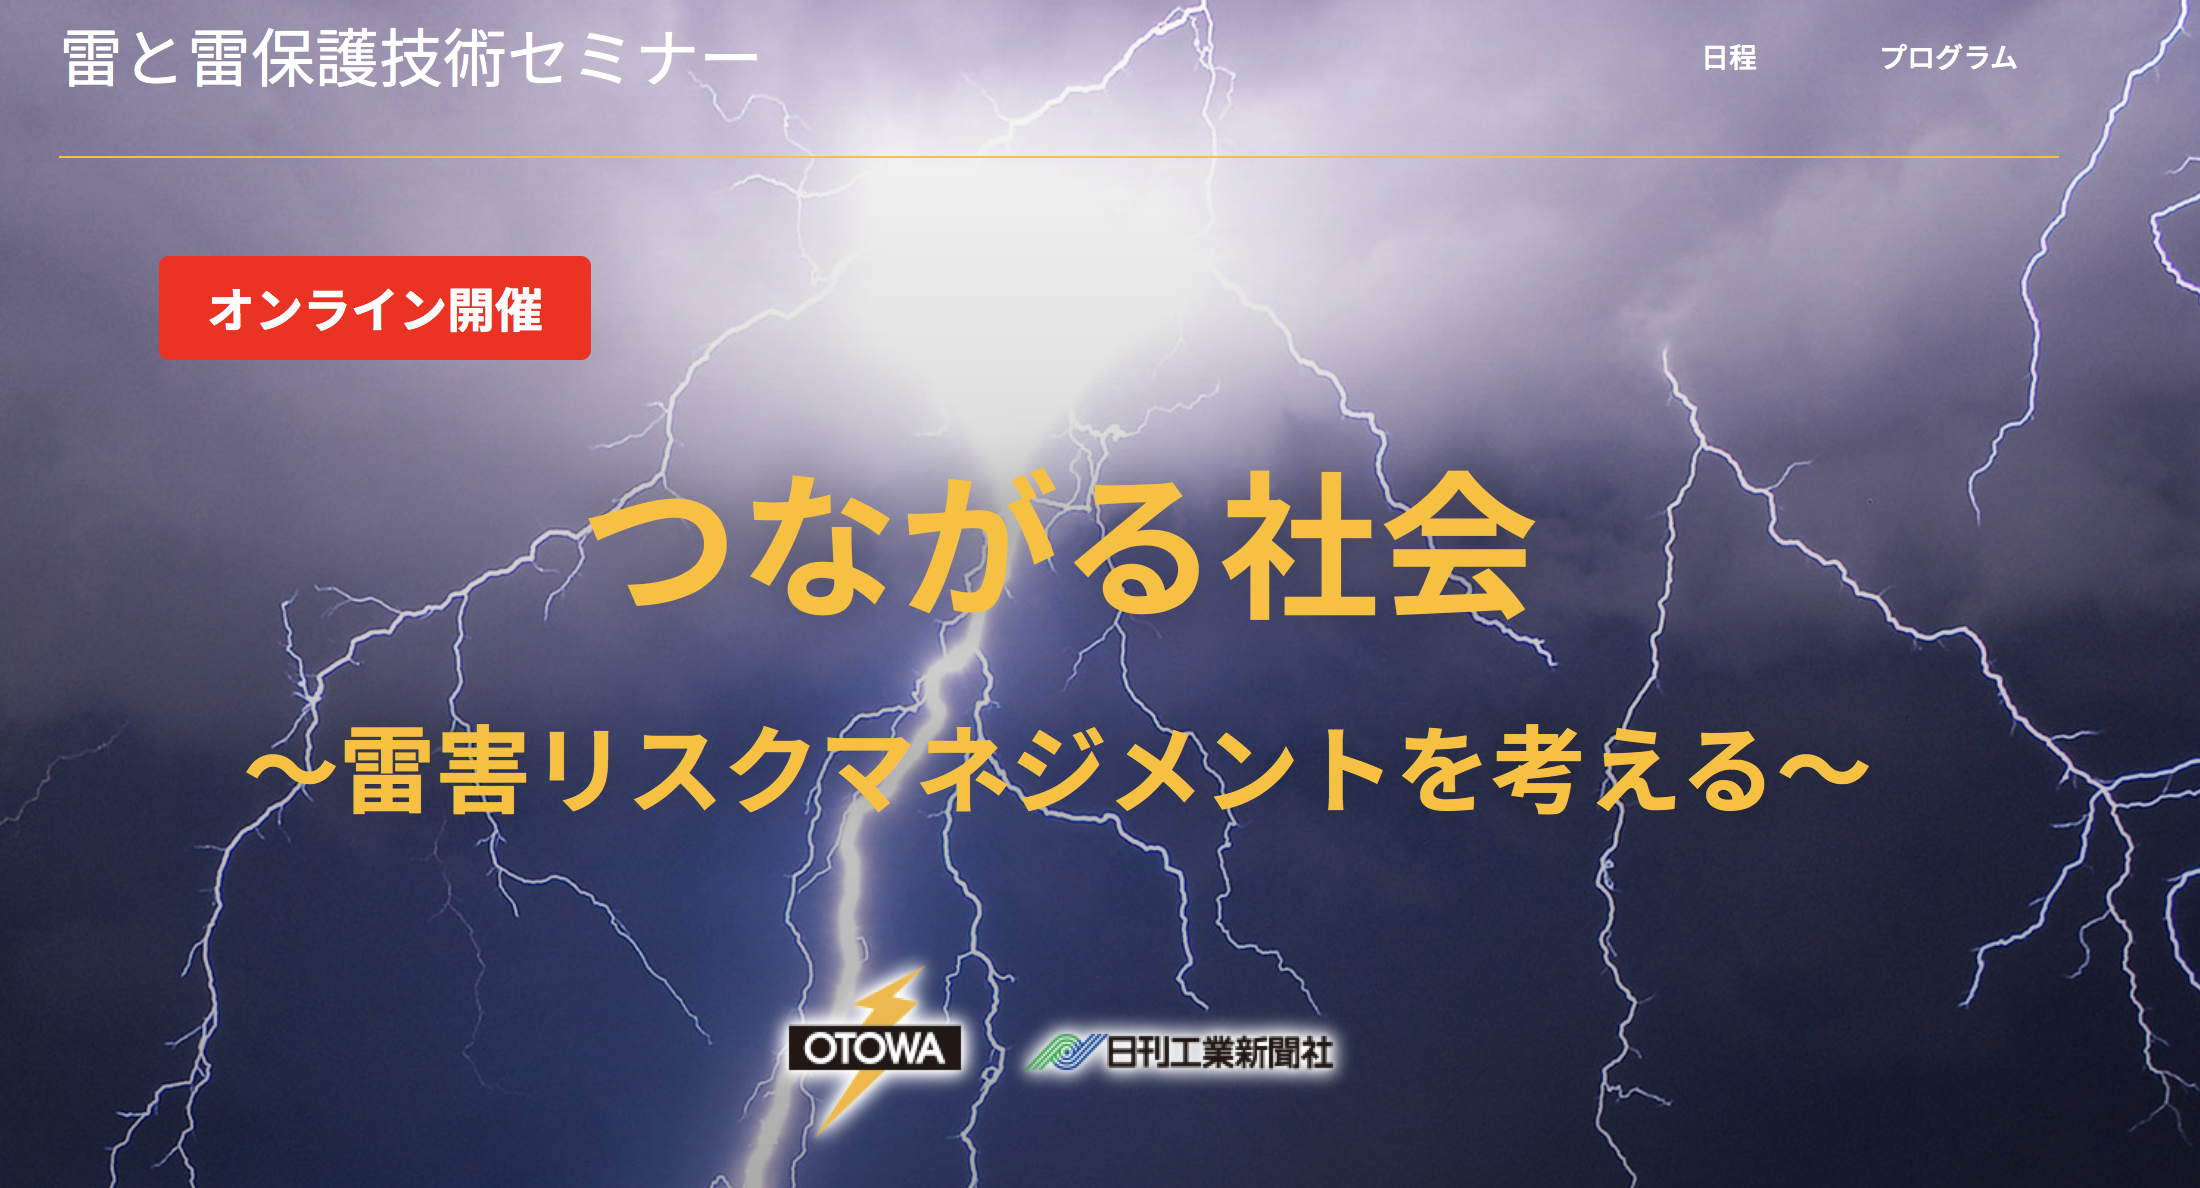 【音羽電機工業×日刊工業新聞】『雷と雷保護技術セミナー』7月16日にオンライン開催の画像